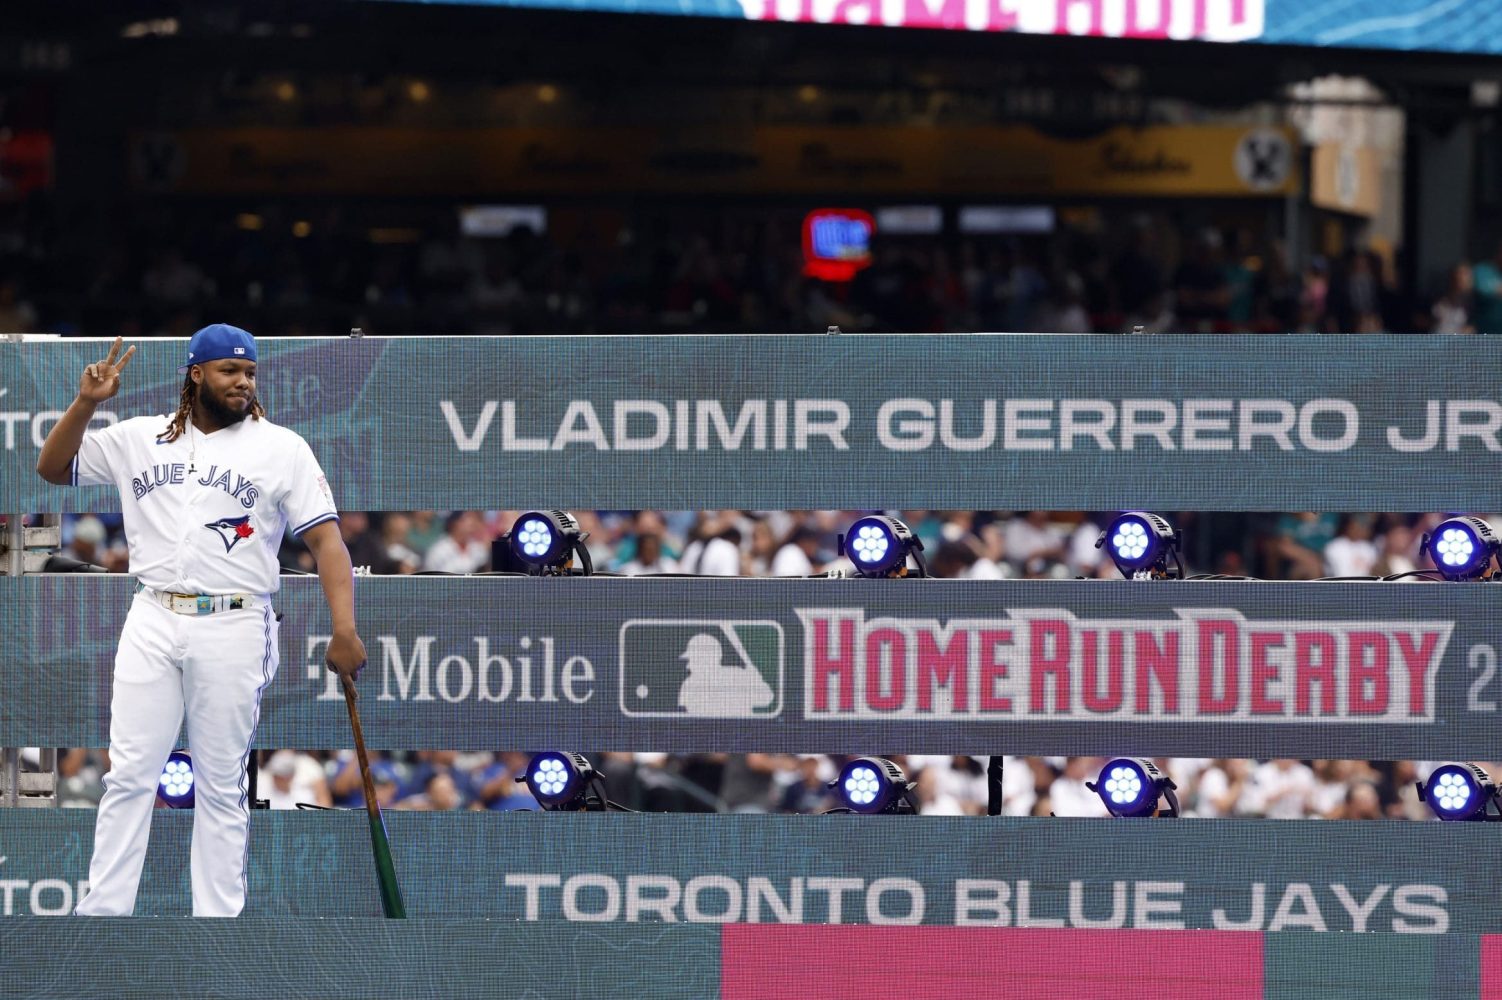 Home Run Derby: Vladimir Guerrero Jr. follows in father's